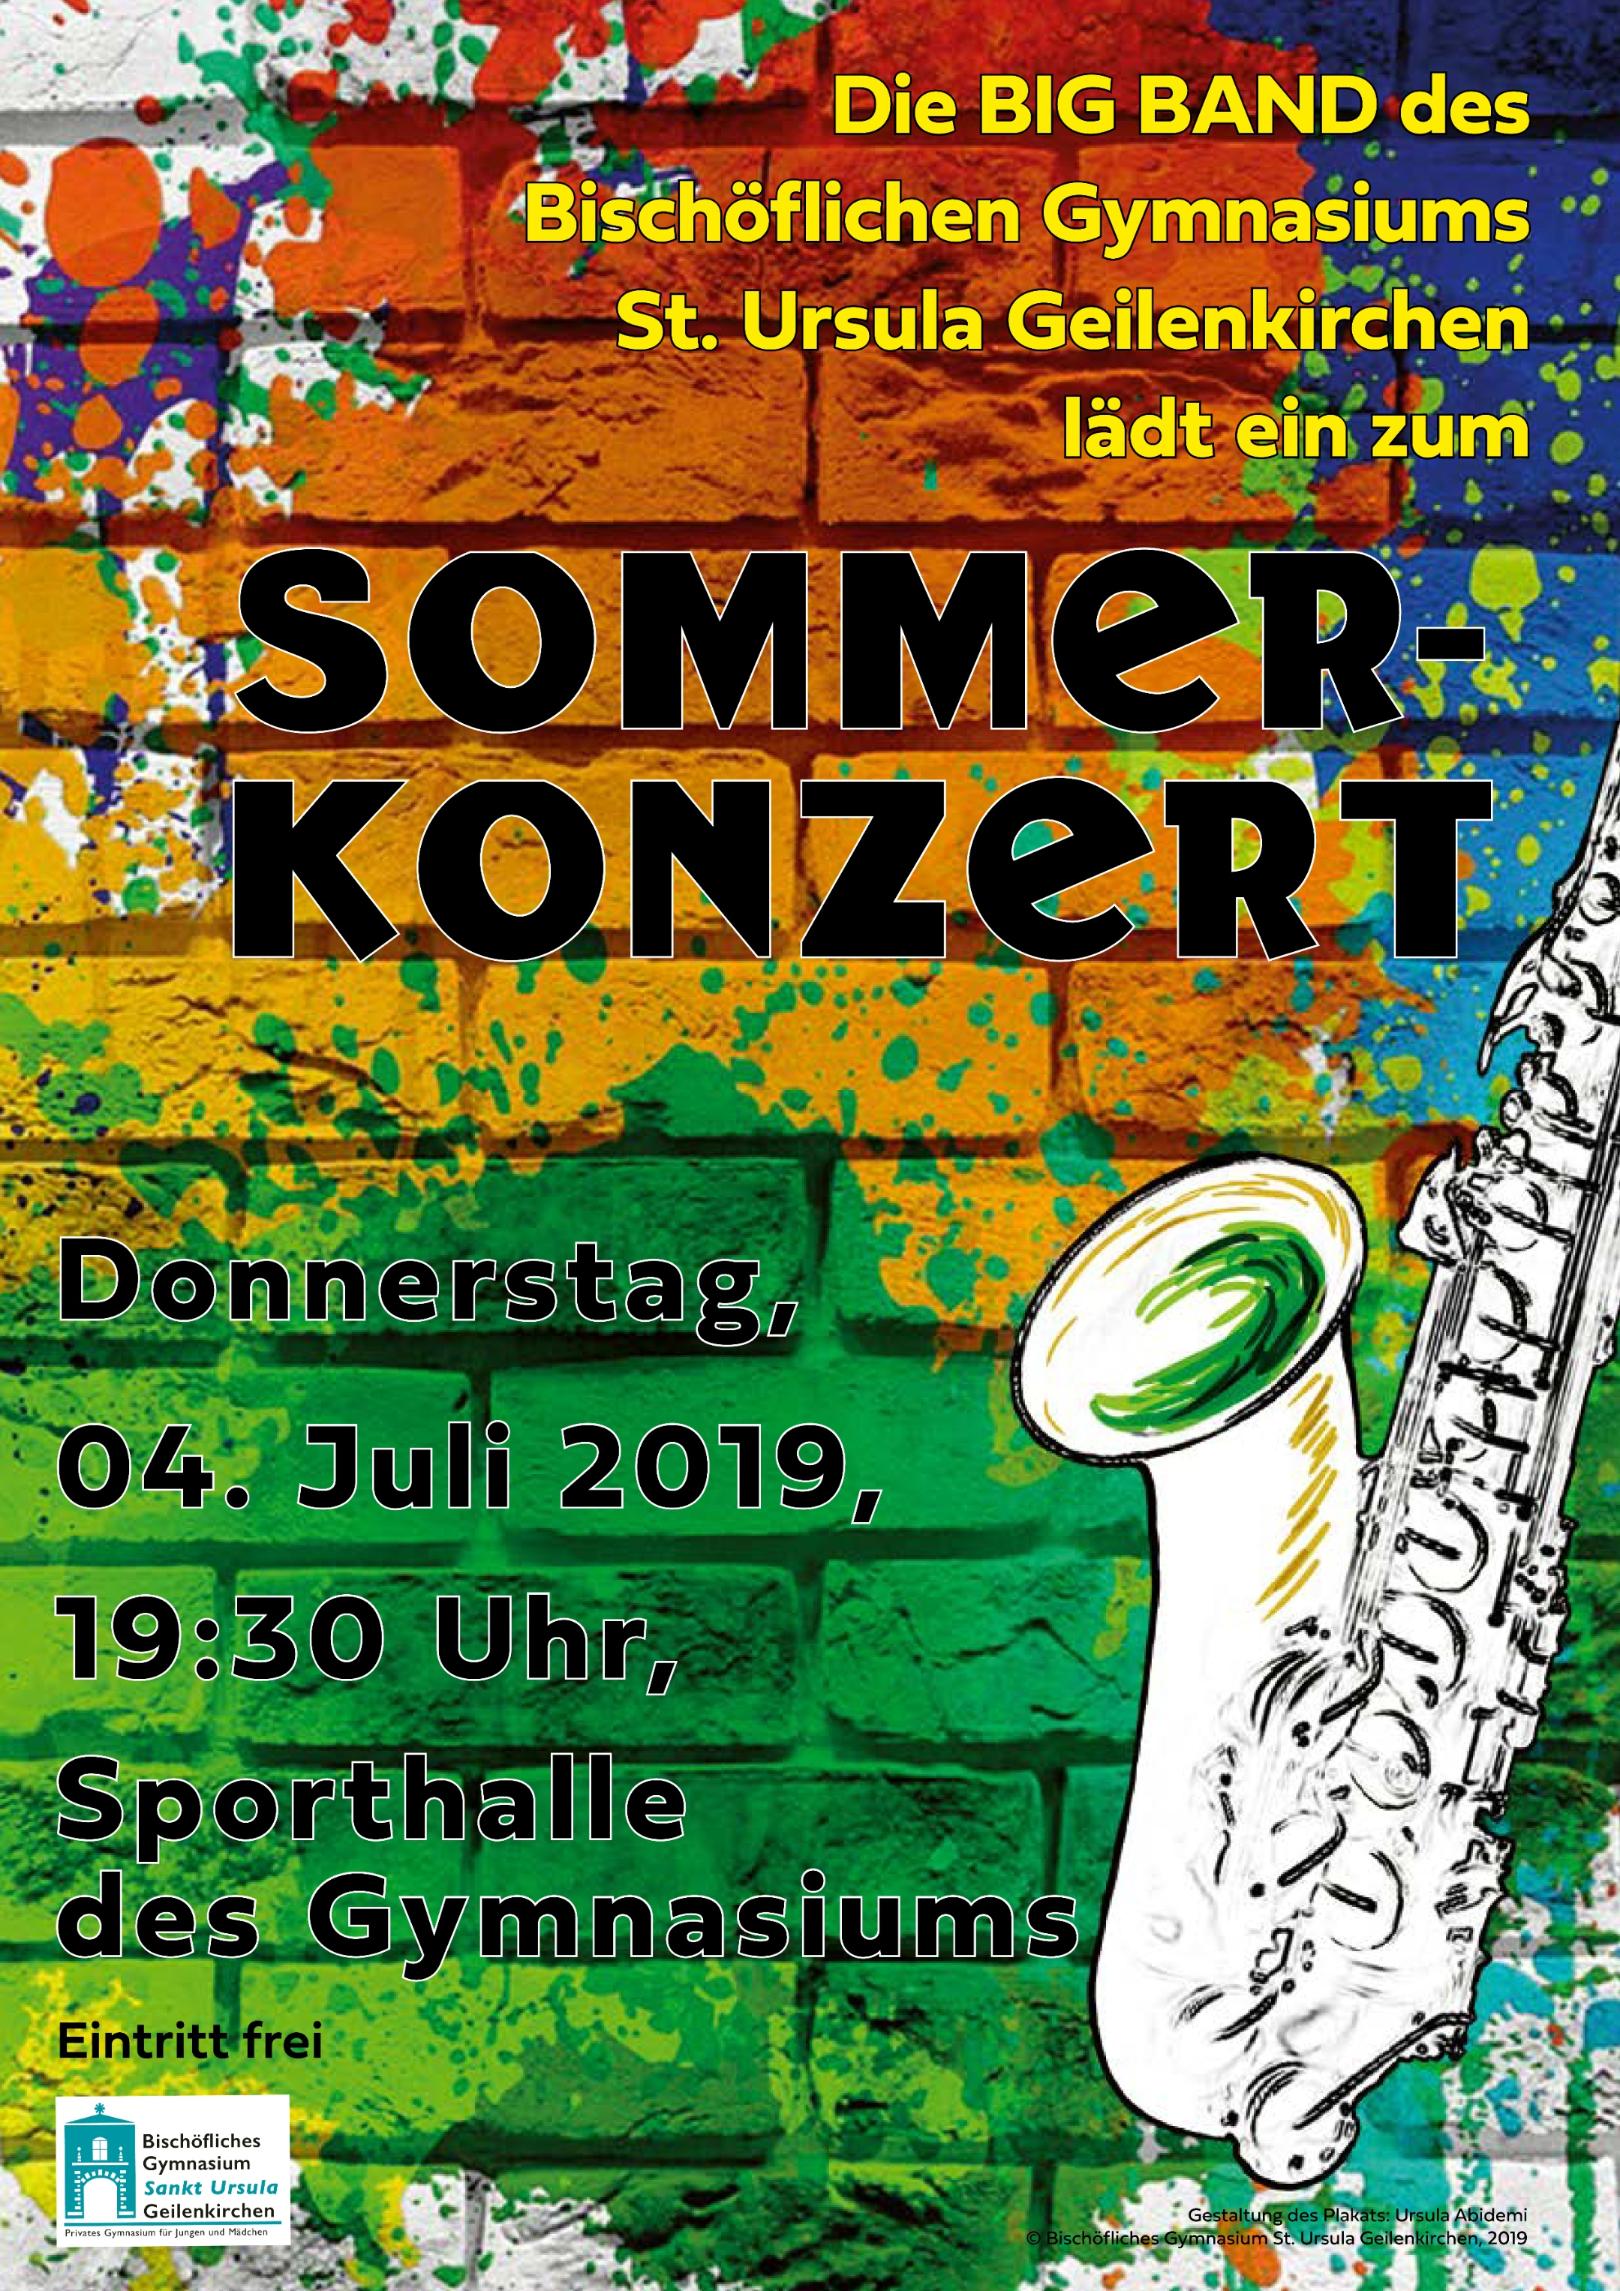 Sommerkonzert (c) Bischöfliches Gymnasium St. Ursula Geilenkirchen (Ursula Abidemi)